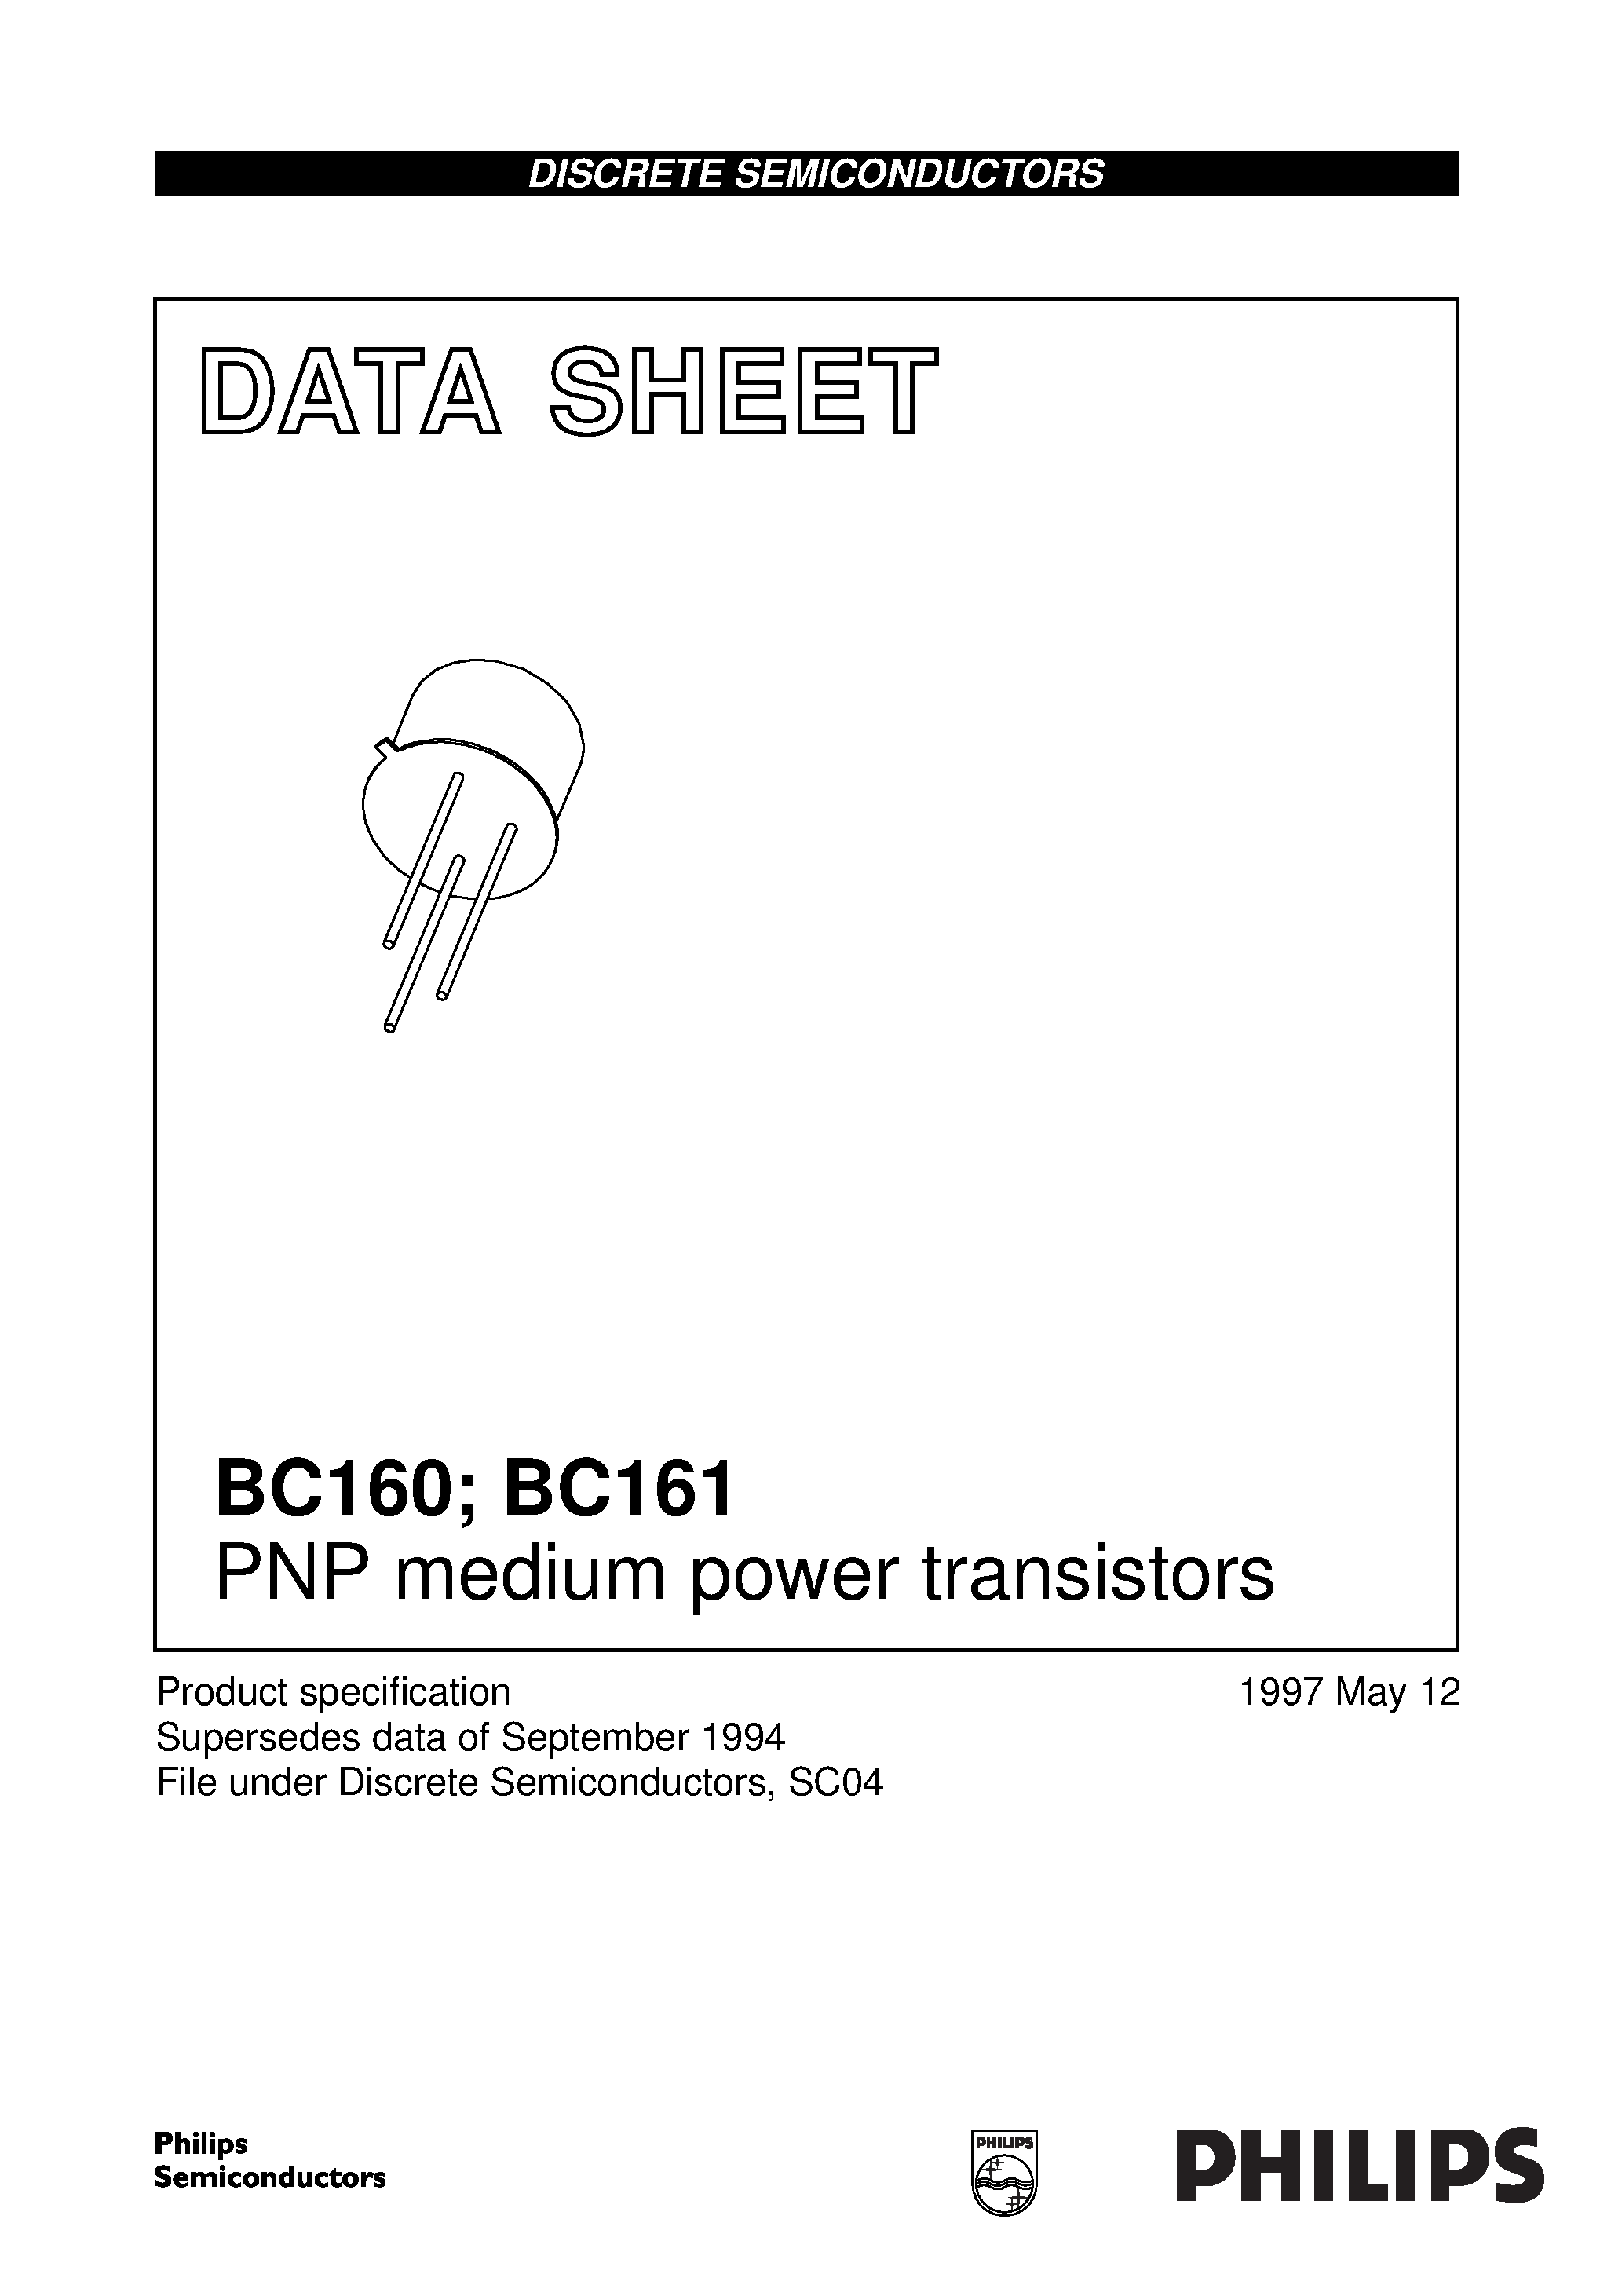 Даташит BC161 - PNP medium power transistors страница 1